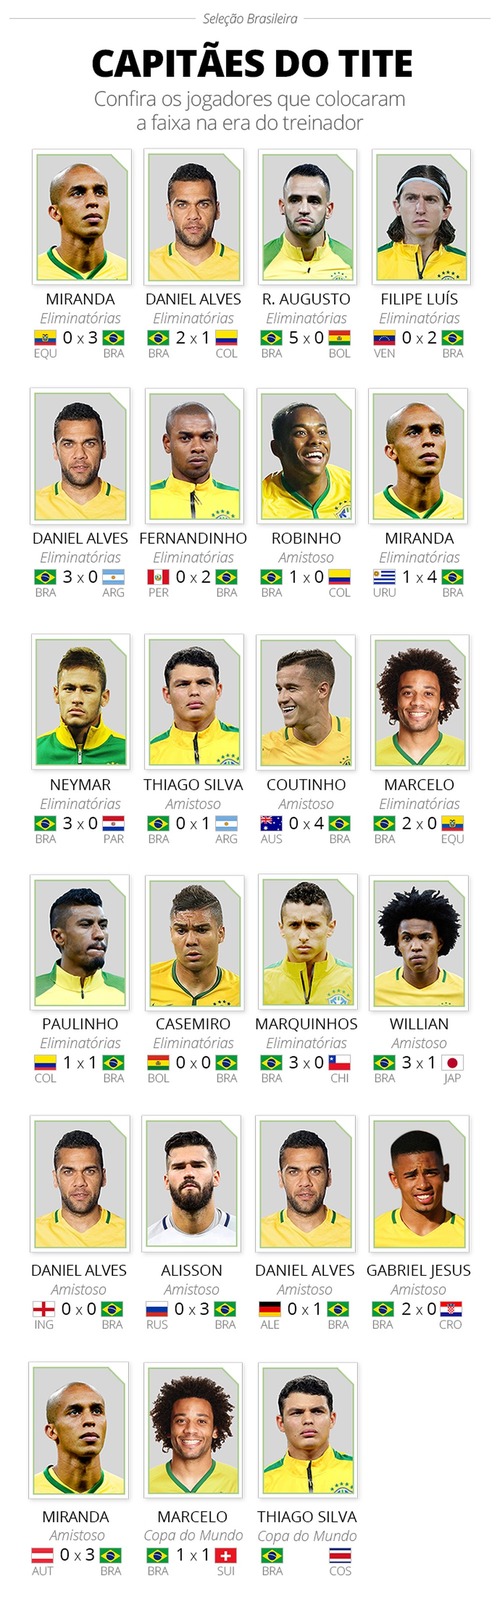 Thiago Silva será o capitão da seleção brasileira contra a Costa Rica